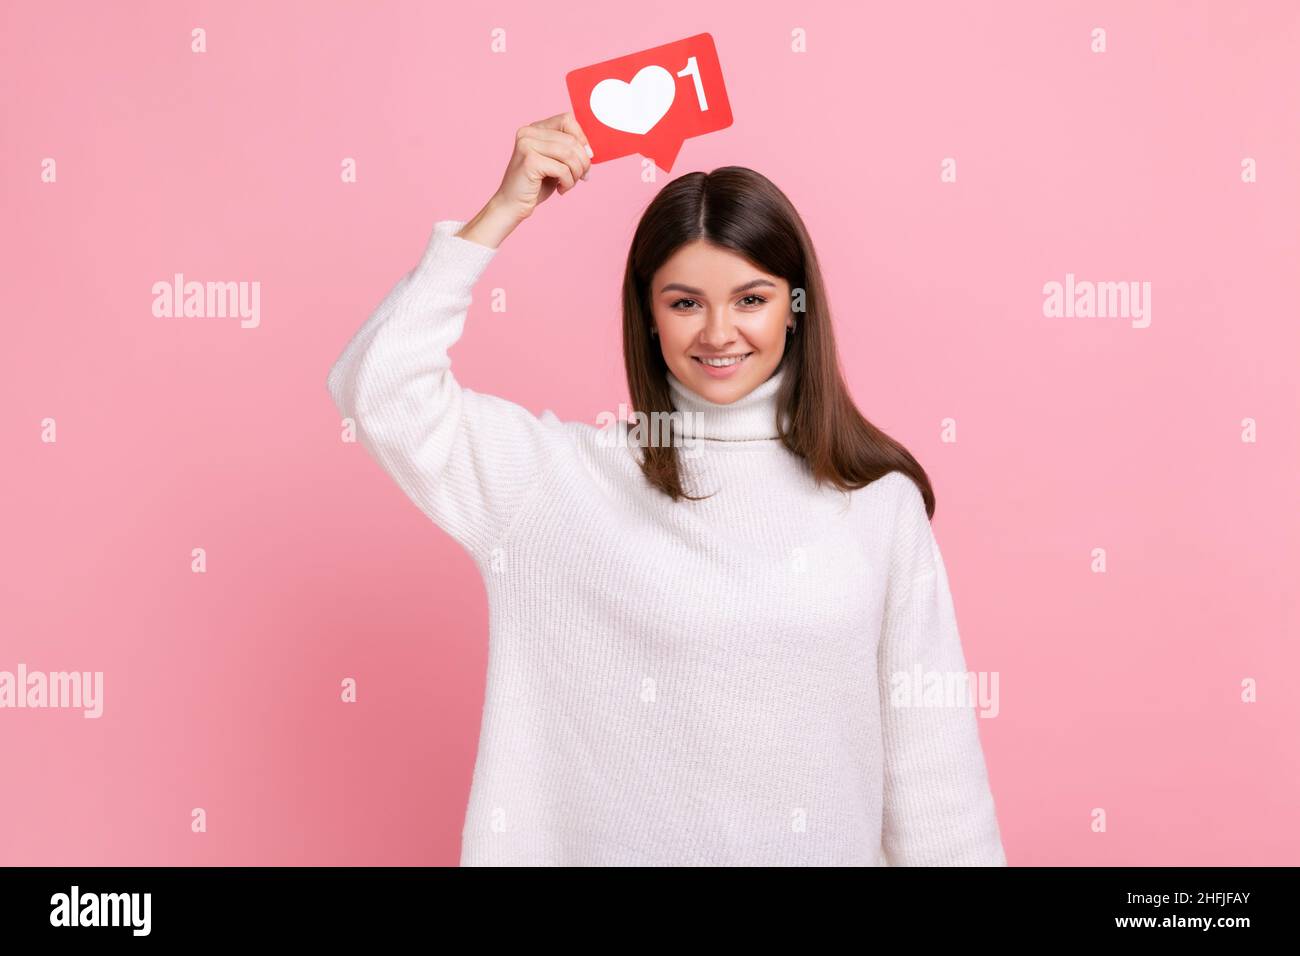 Lächelnde Frau, die Herz-Ikone über den Kopf hält und empfiehlt, dem Blog mit interessanten Inhalten zu folgen und einen weißen Pullover im lässigen Stil zu tragen. Innenaufnahme des Studios isoliert auf rosa Hintergrund. Stockfoto